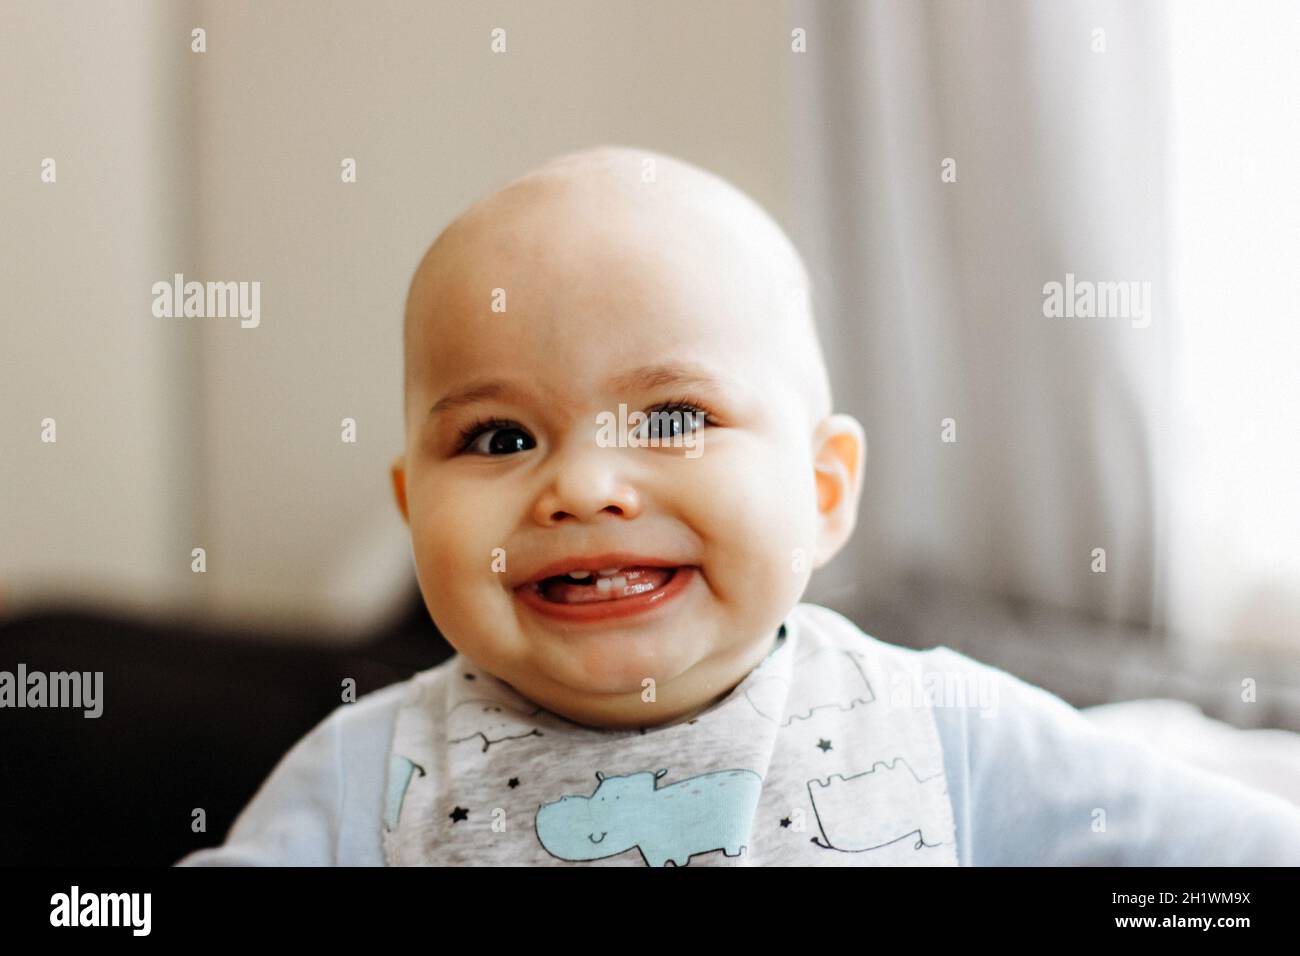 Süßer kleiner Junge mit molligen Wangen und großen Augen. Porträt eines glücklichen Säuglings Stockfoto